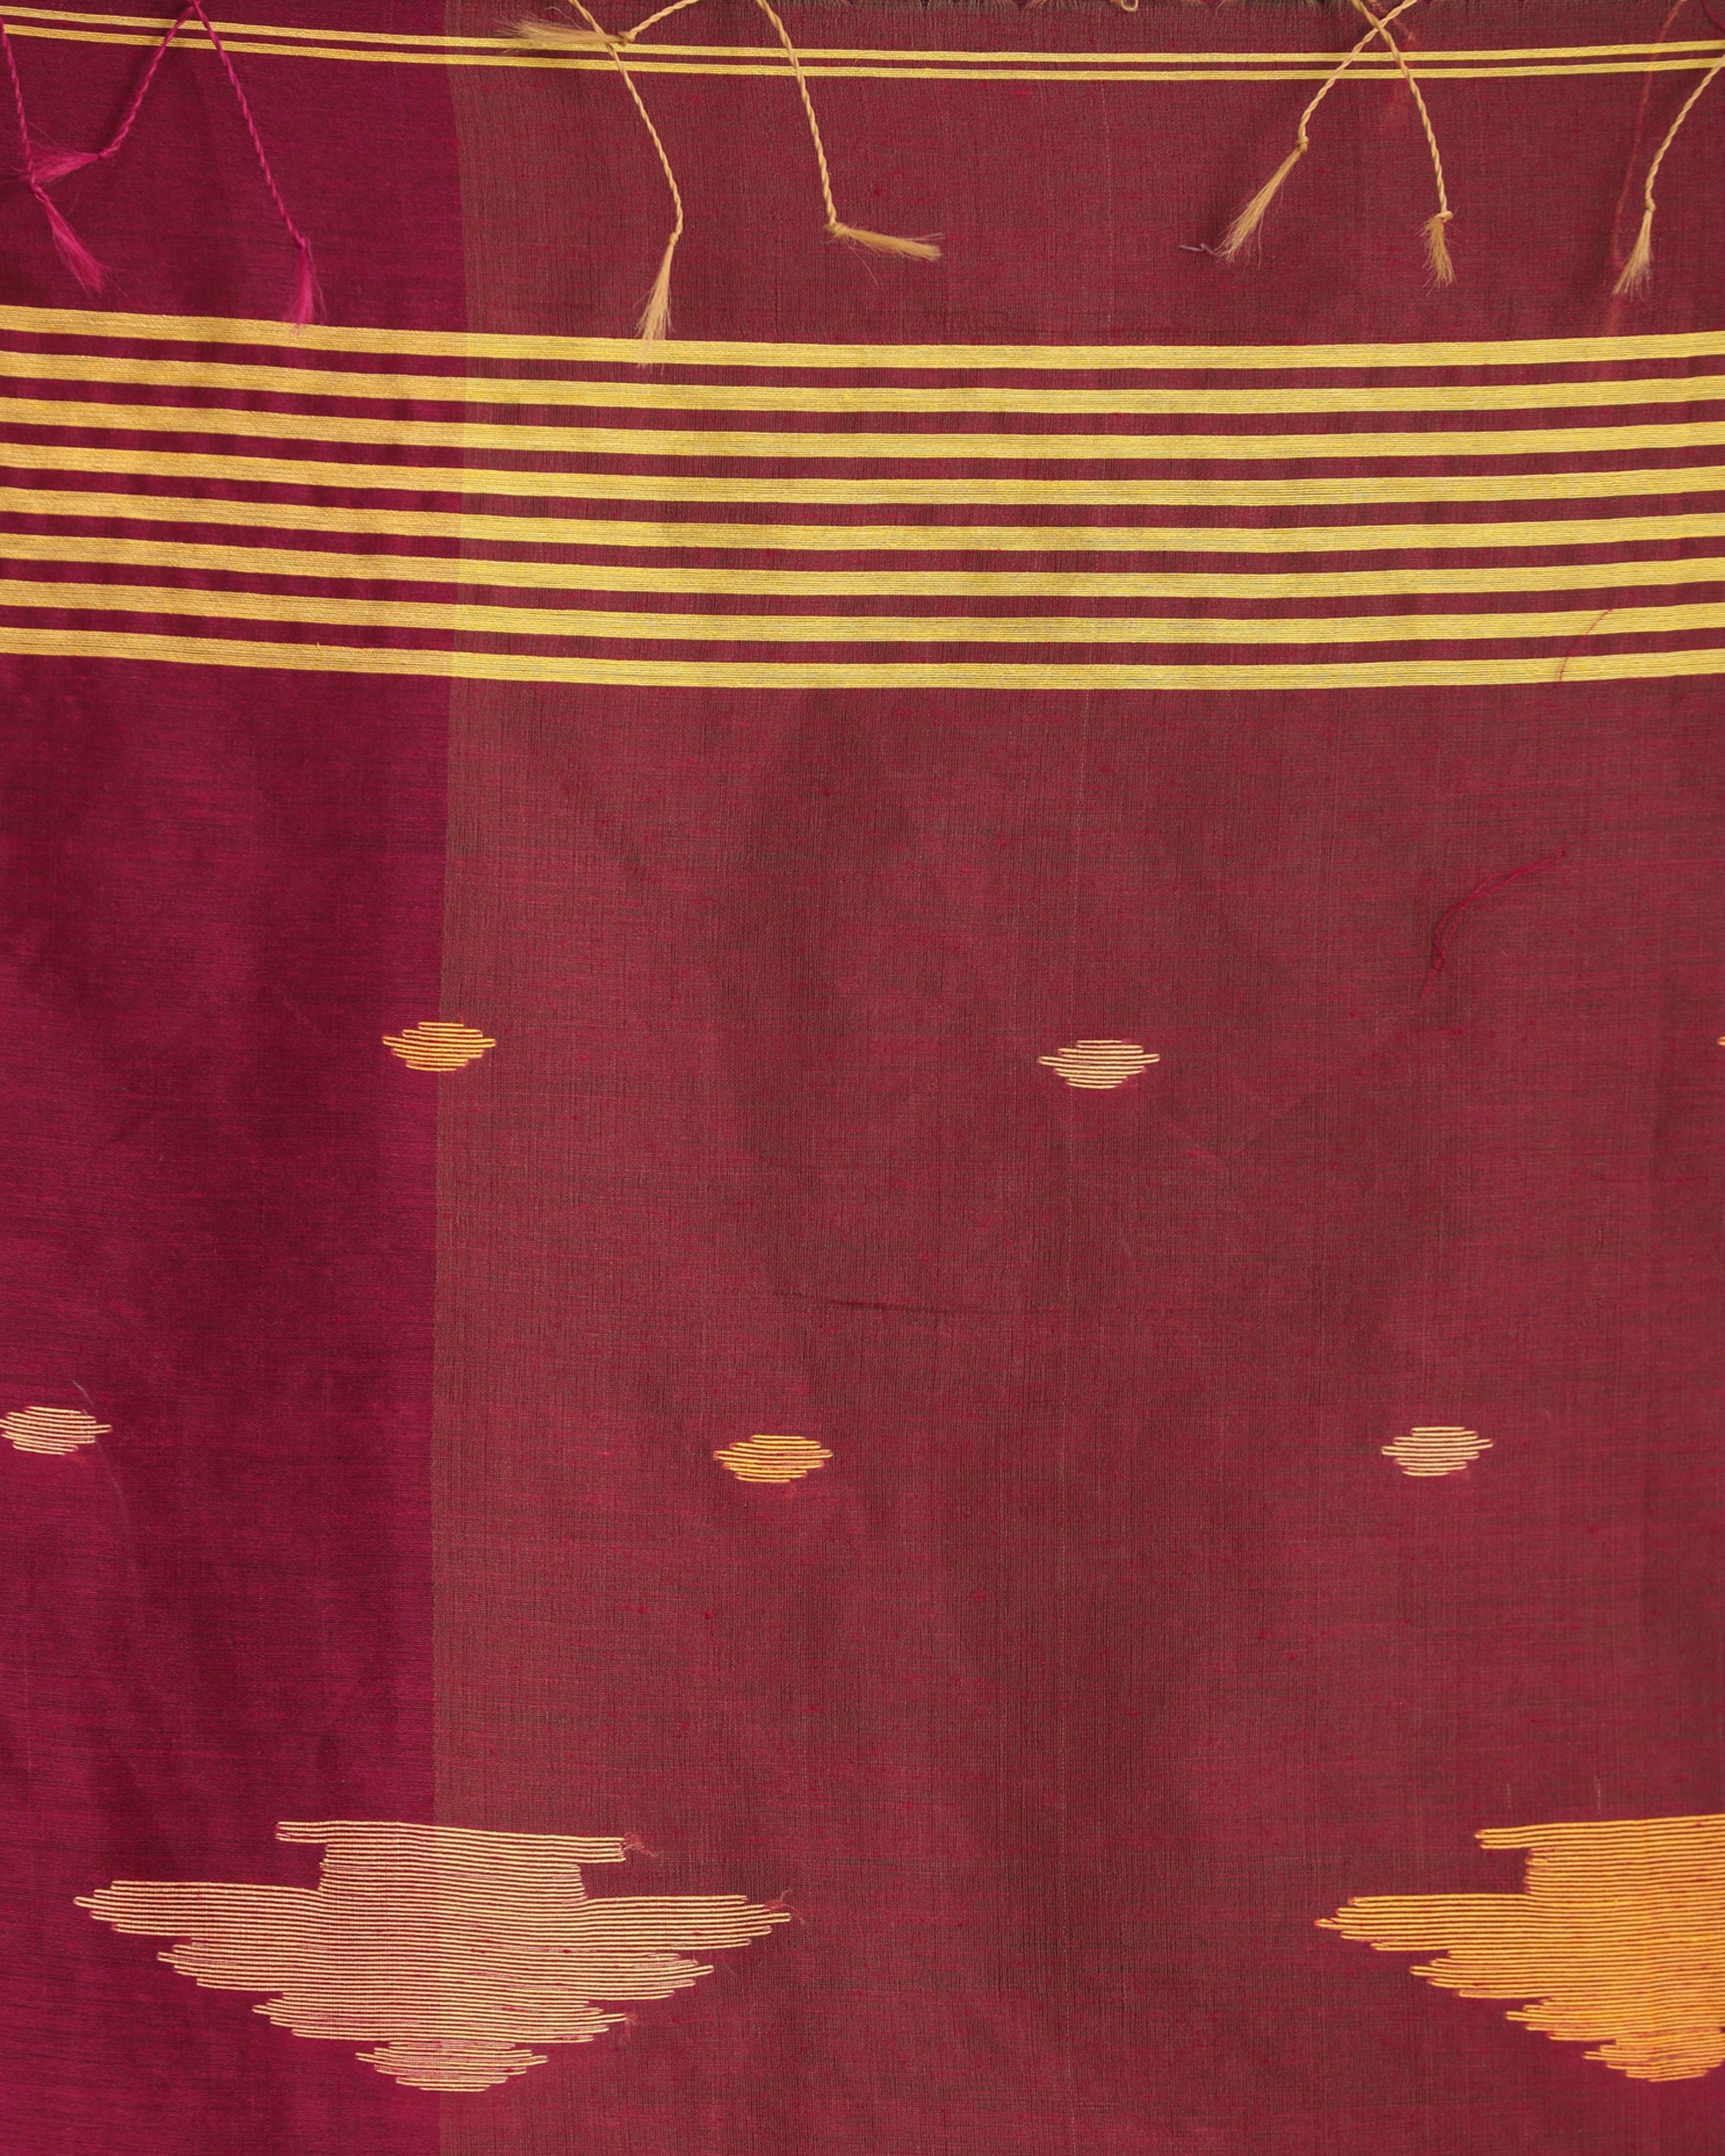 Women's Fuchsia Light Mustard Cotton Blend Handloom Tie Dye Jamdani Saree - Angoshobha